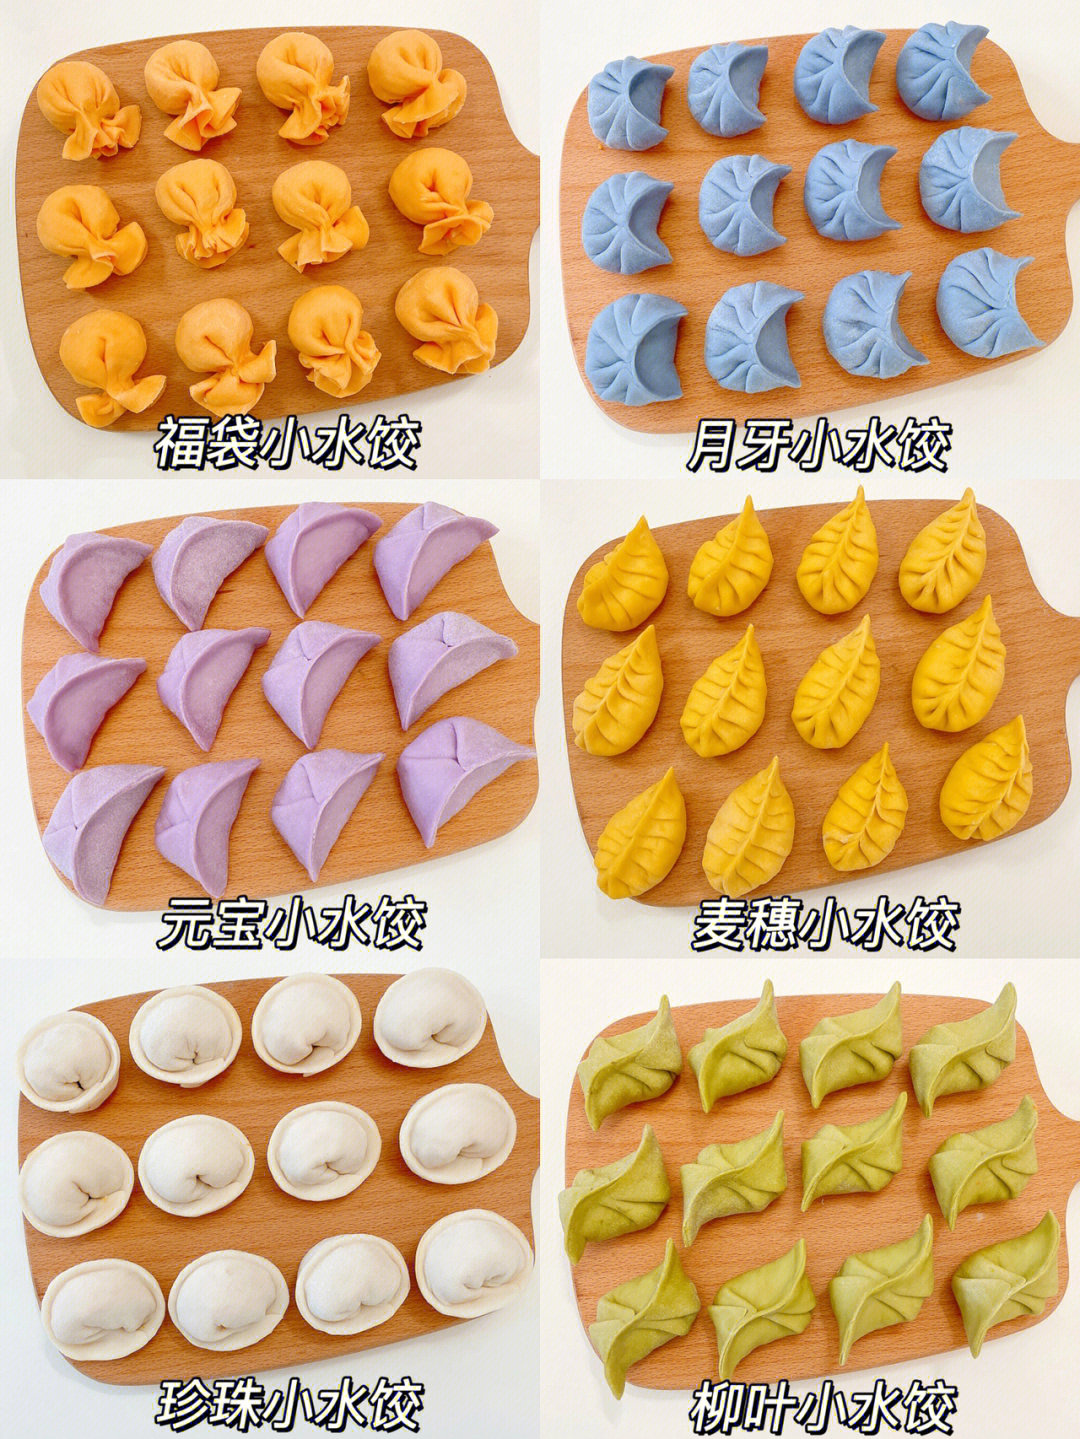 可可爱爱的办法,宝宝爱吃的停不下来7515～97彩色饺子皮做法